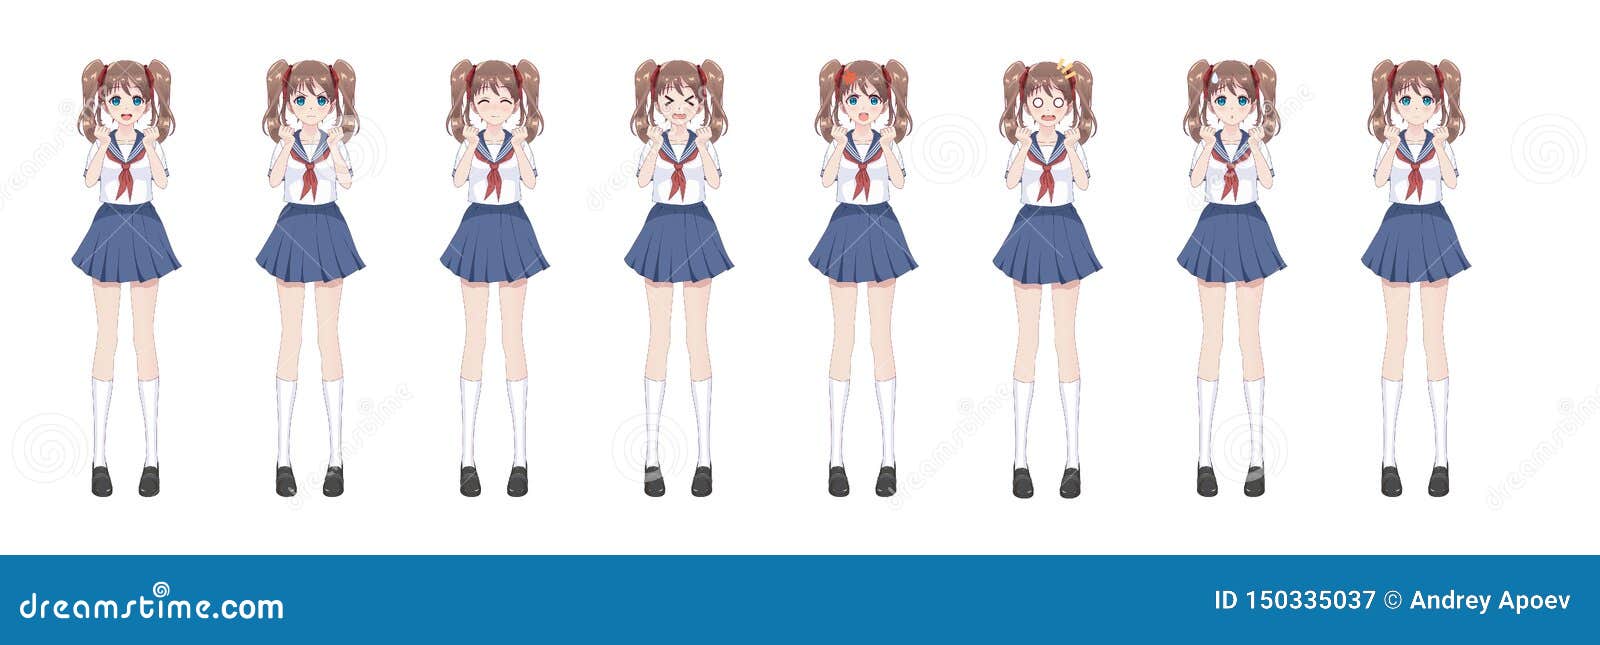 Estudante Do Manga Do Anime No Terno De Marinheiro, Saia Azul Ilustração do  Vetor - Ilustração de emocional, escola: 150335037